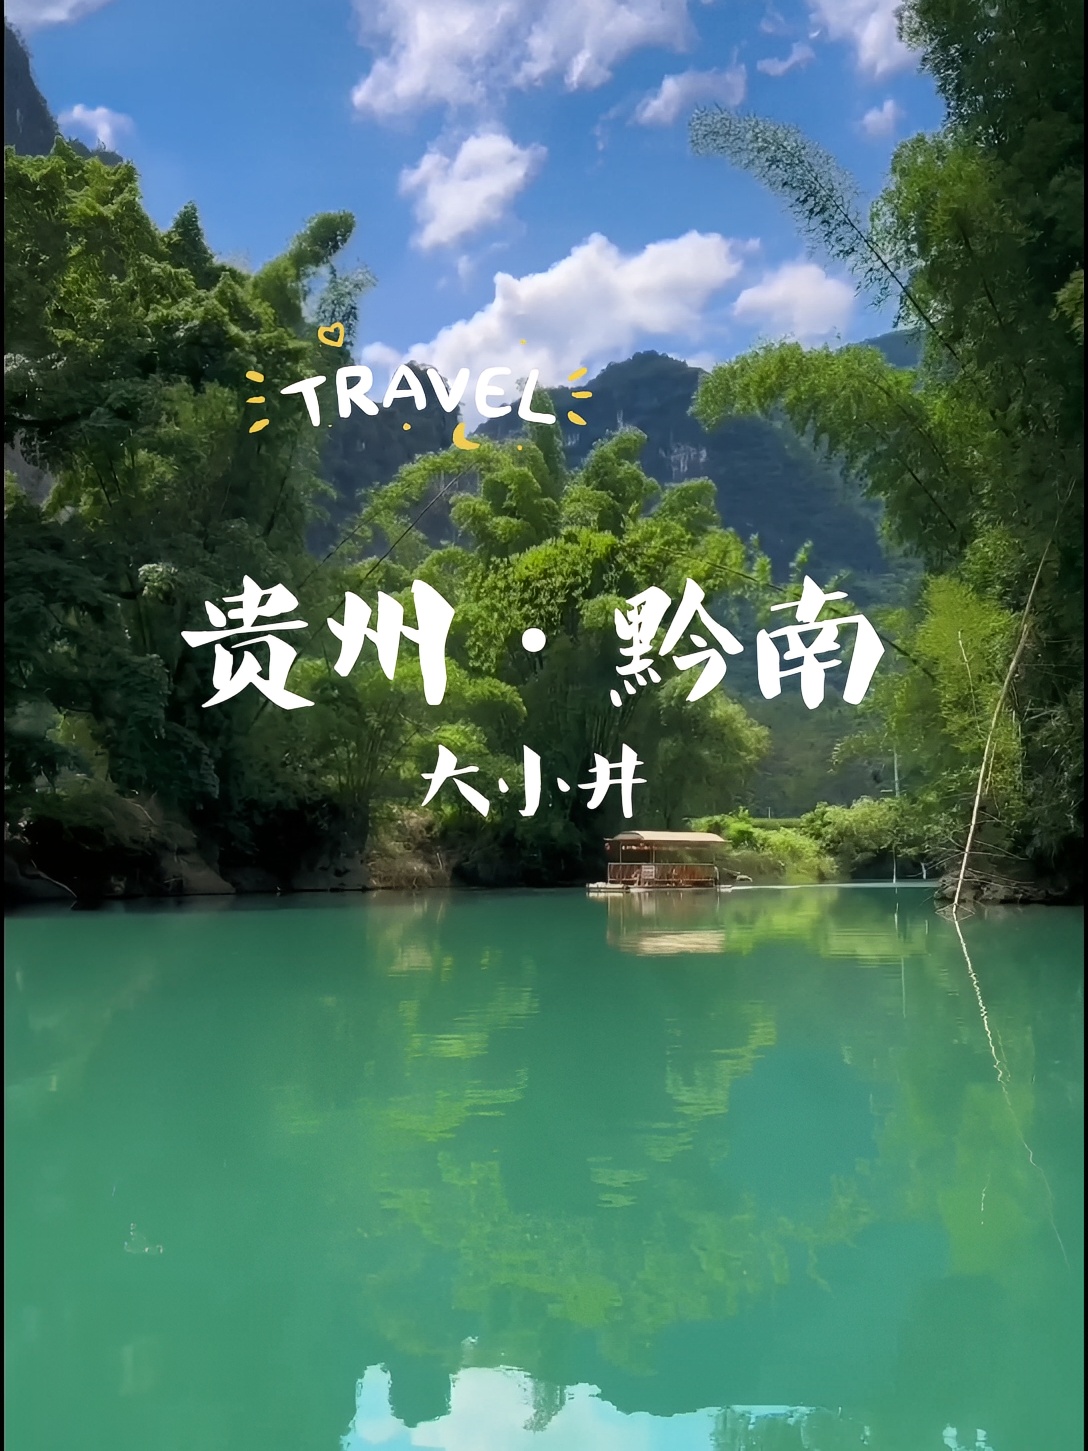 贵州大小井真的好美#山水如画 #竹筏 #风景 #一起来玩水 #贵州旅游#旅行推荐官